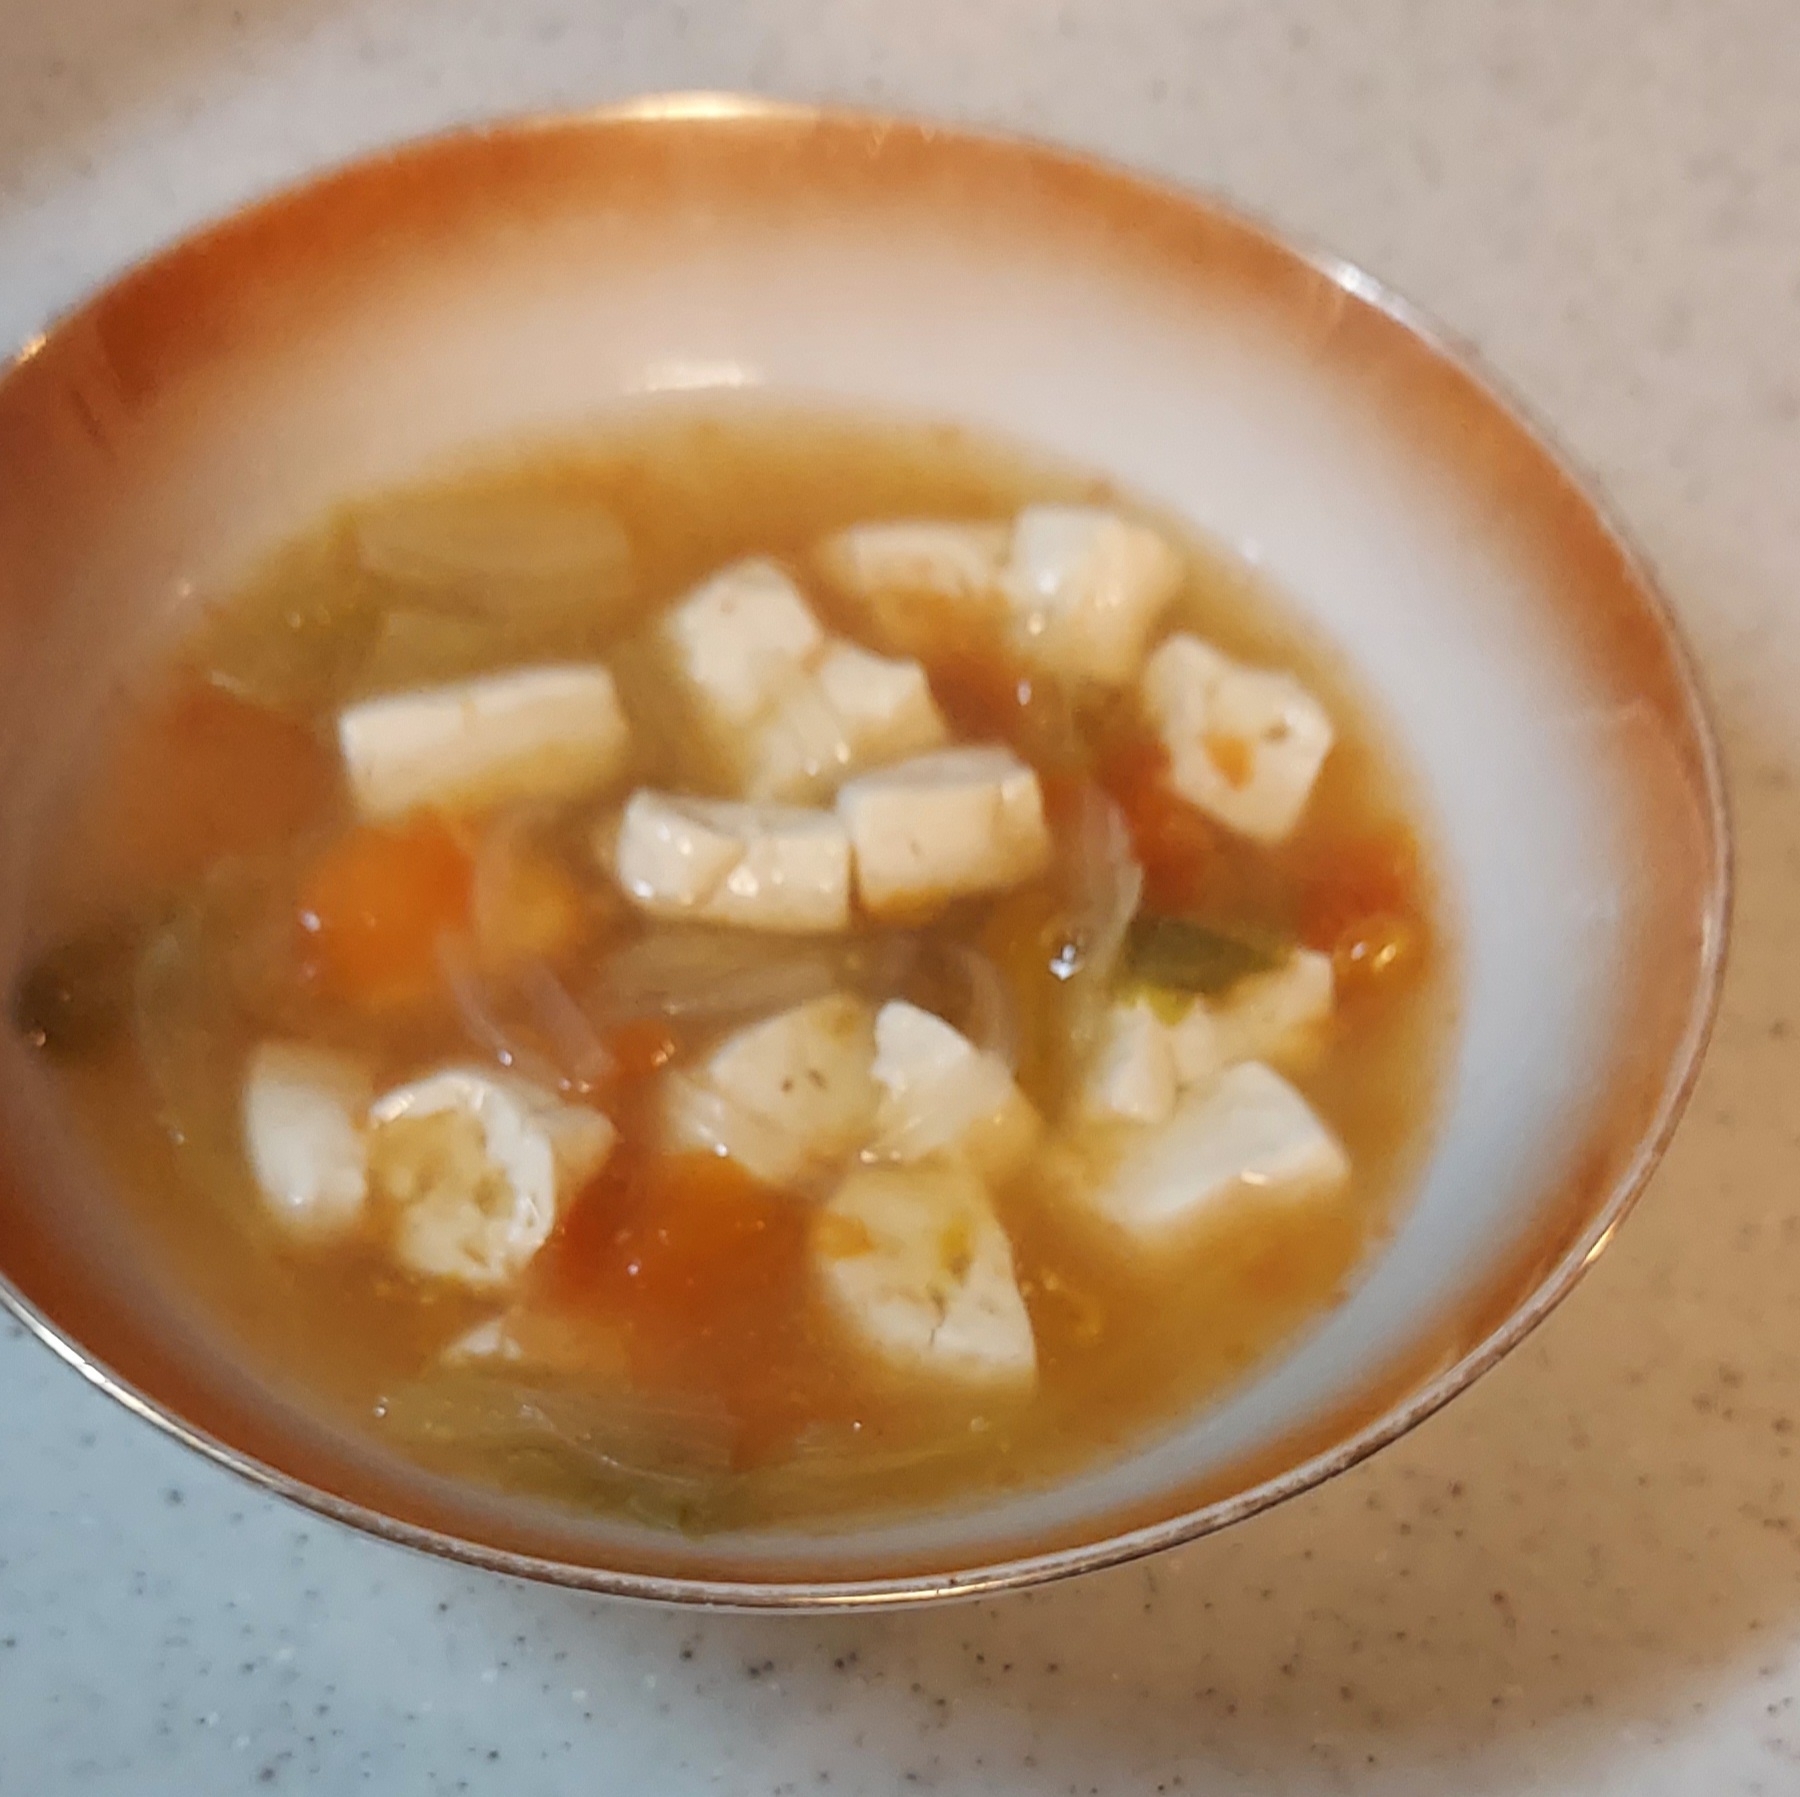 トマト&豆腐&レタスのスープ